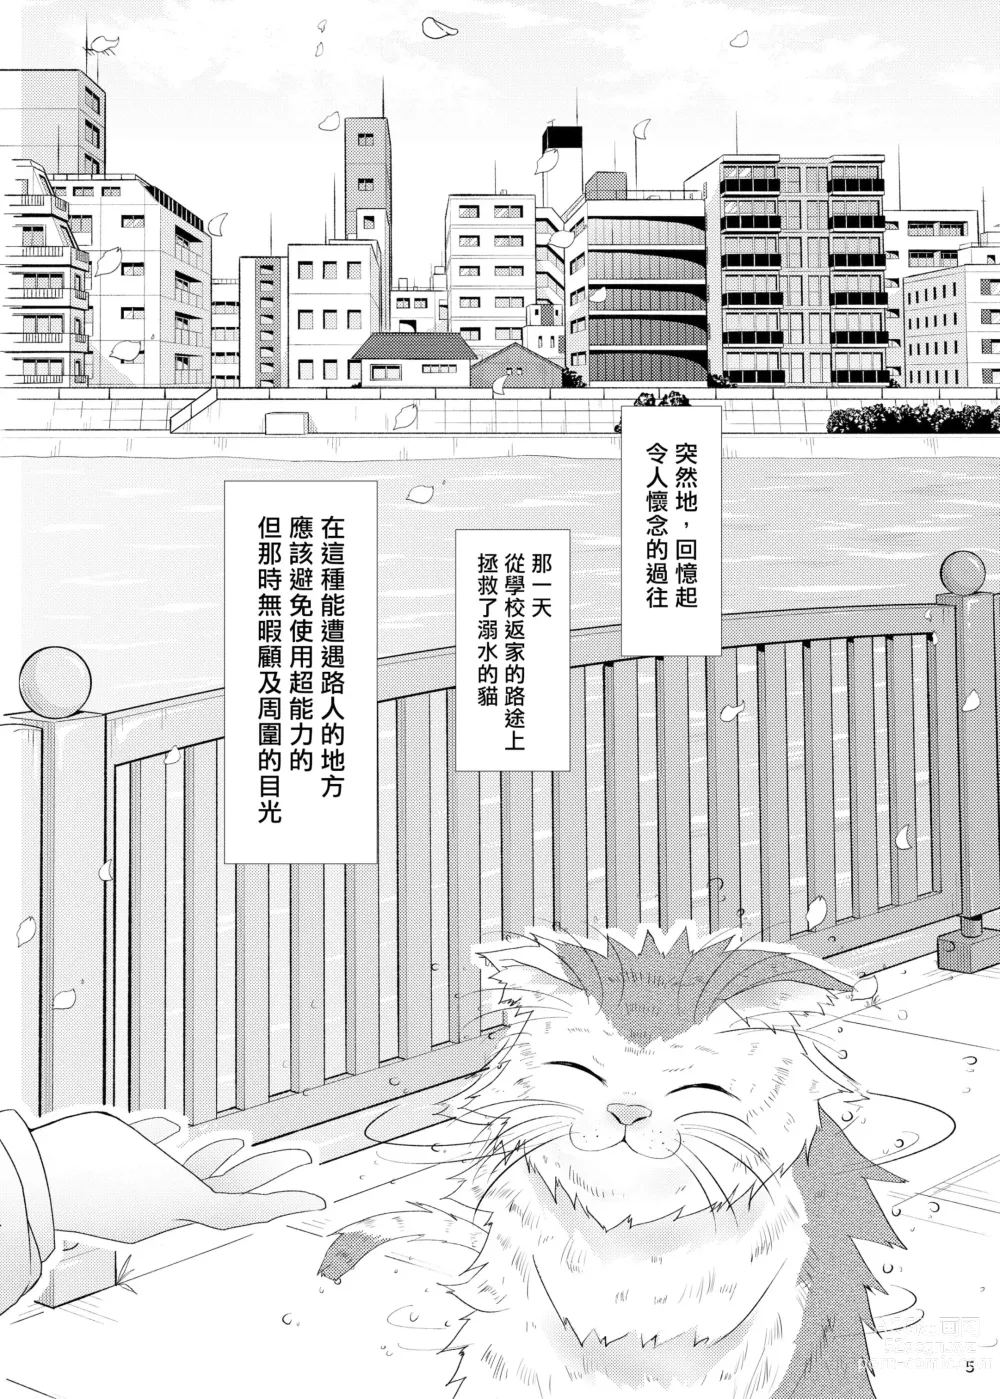 Page 4 of doujinshi Hatsukoi Sumireko